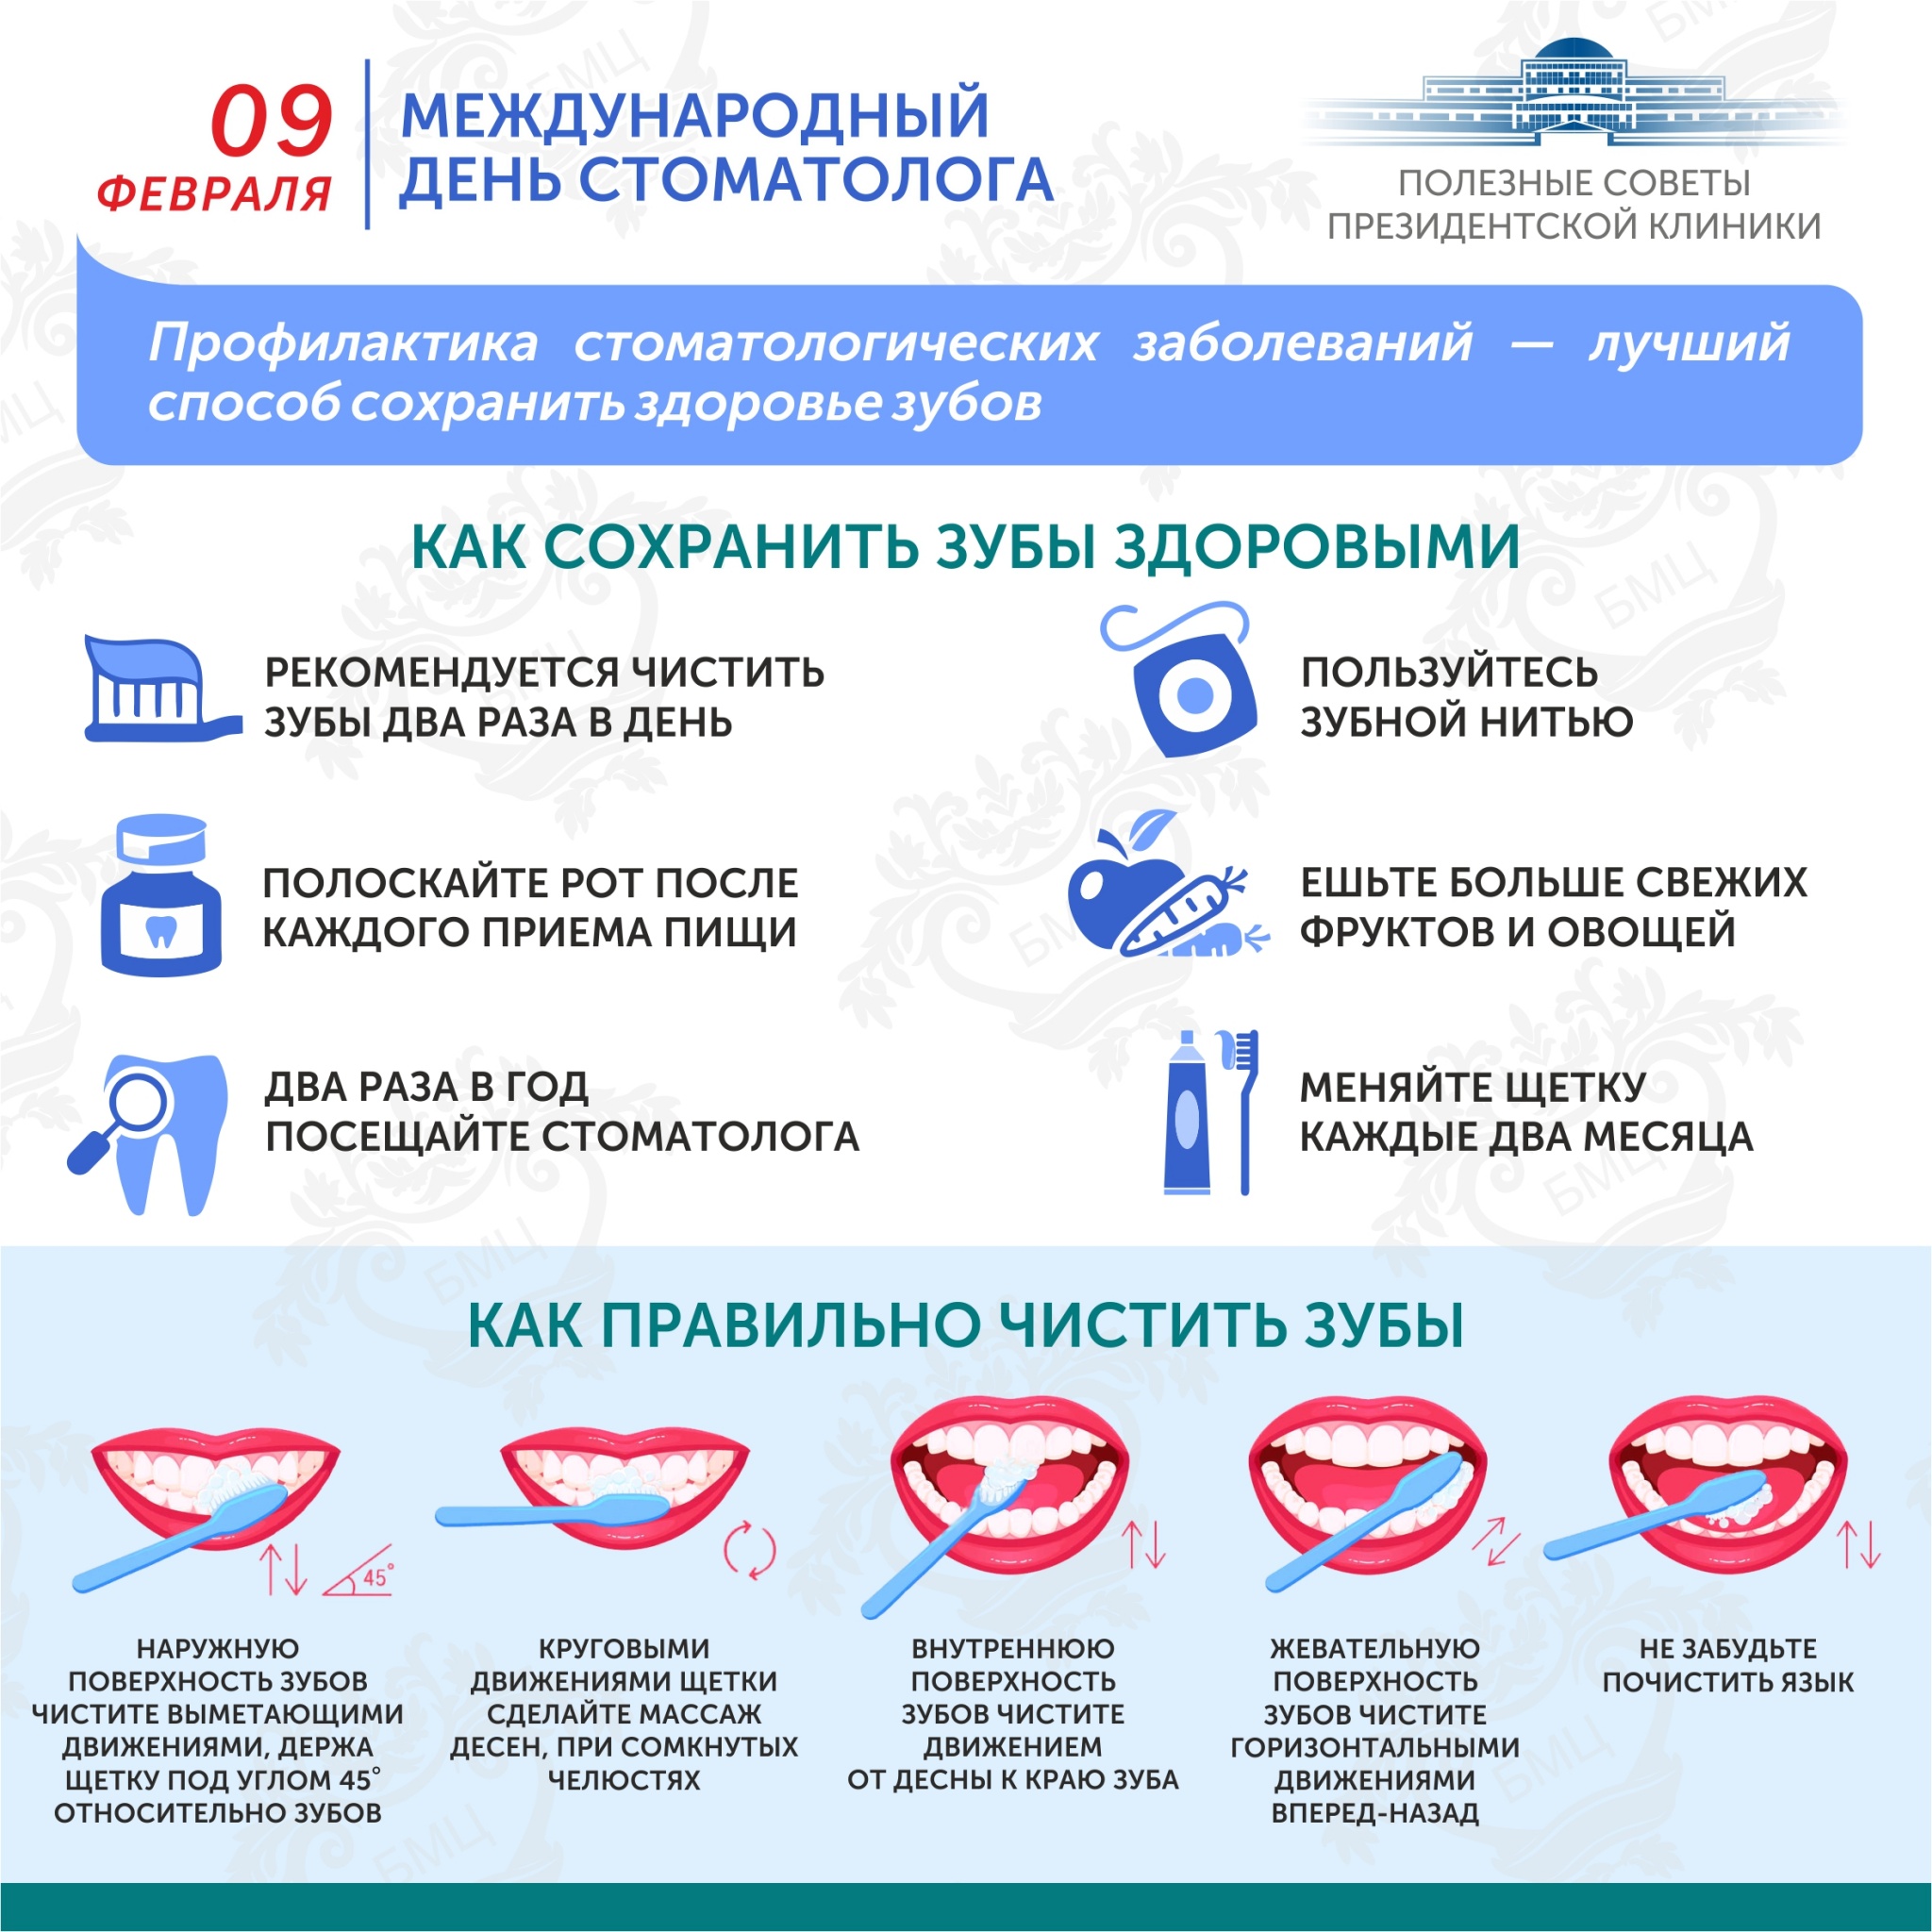 Международный день стоматолога (рус).jpg